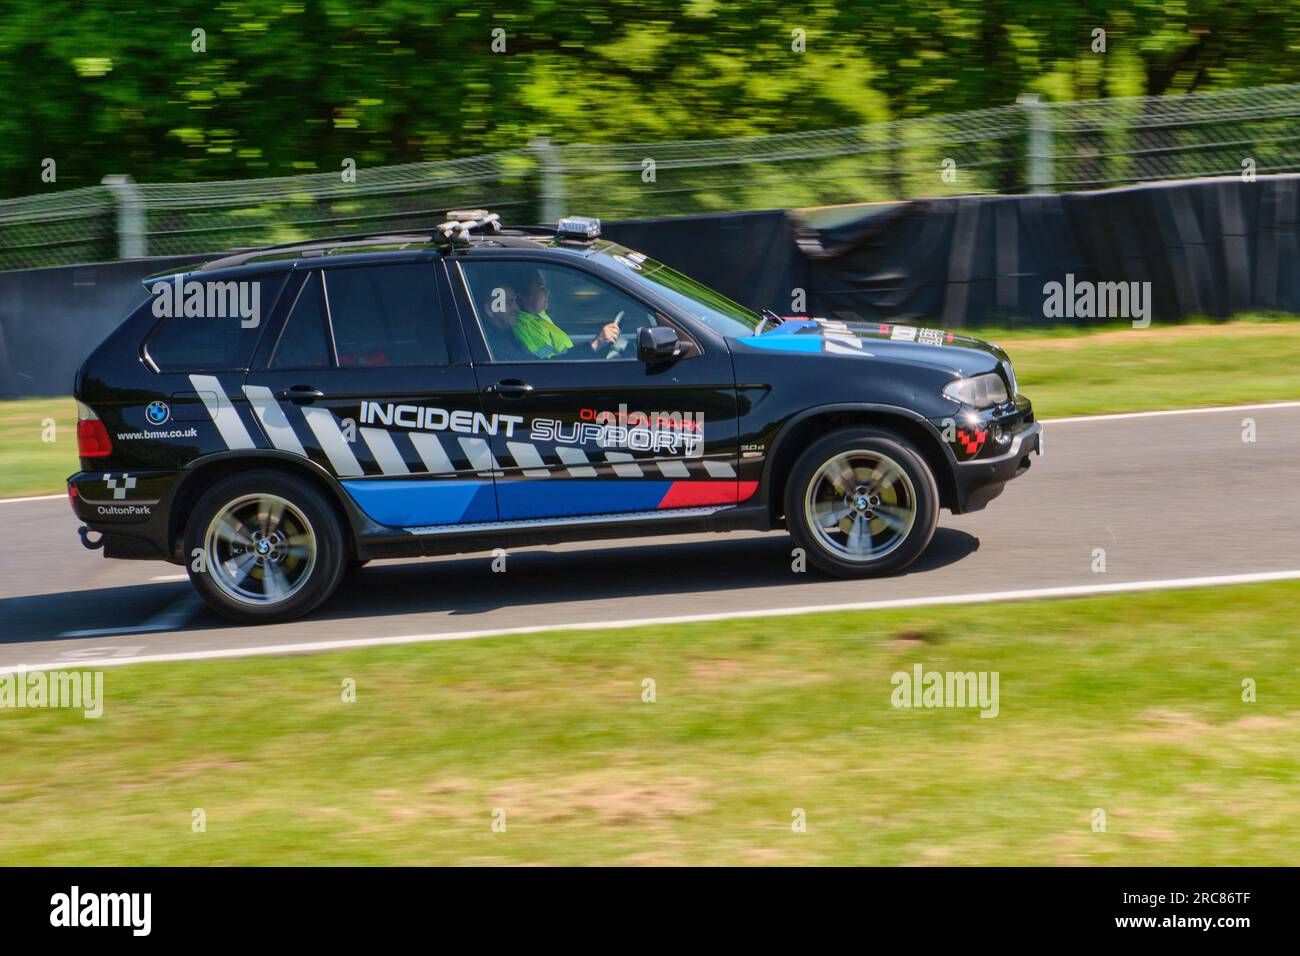 BMW X5 Incident Support Car controlla la pista di Oulton Park dopo un incidente. Foto Stock